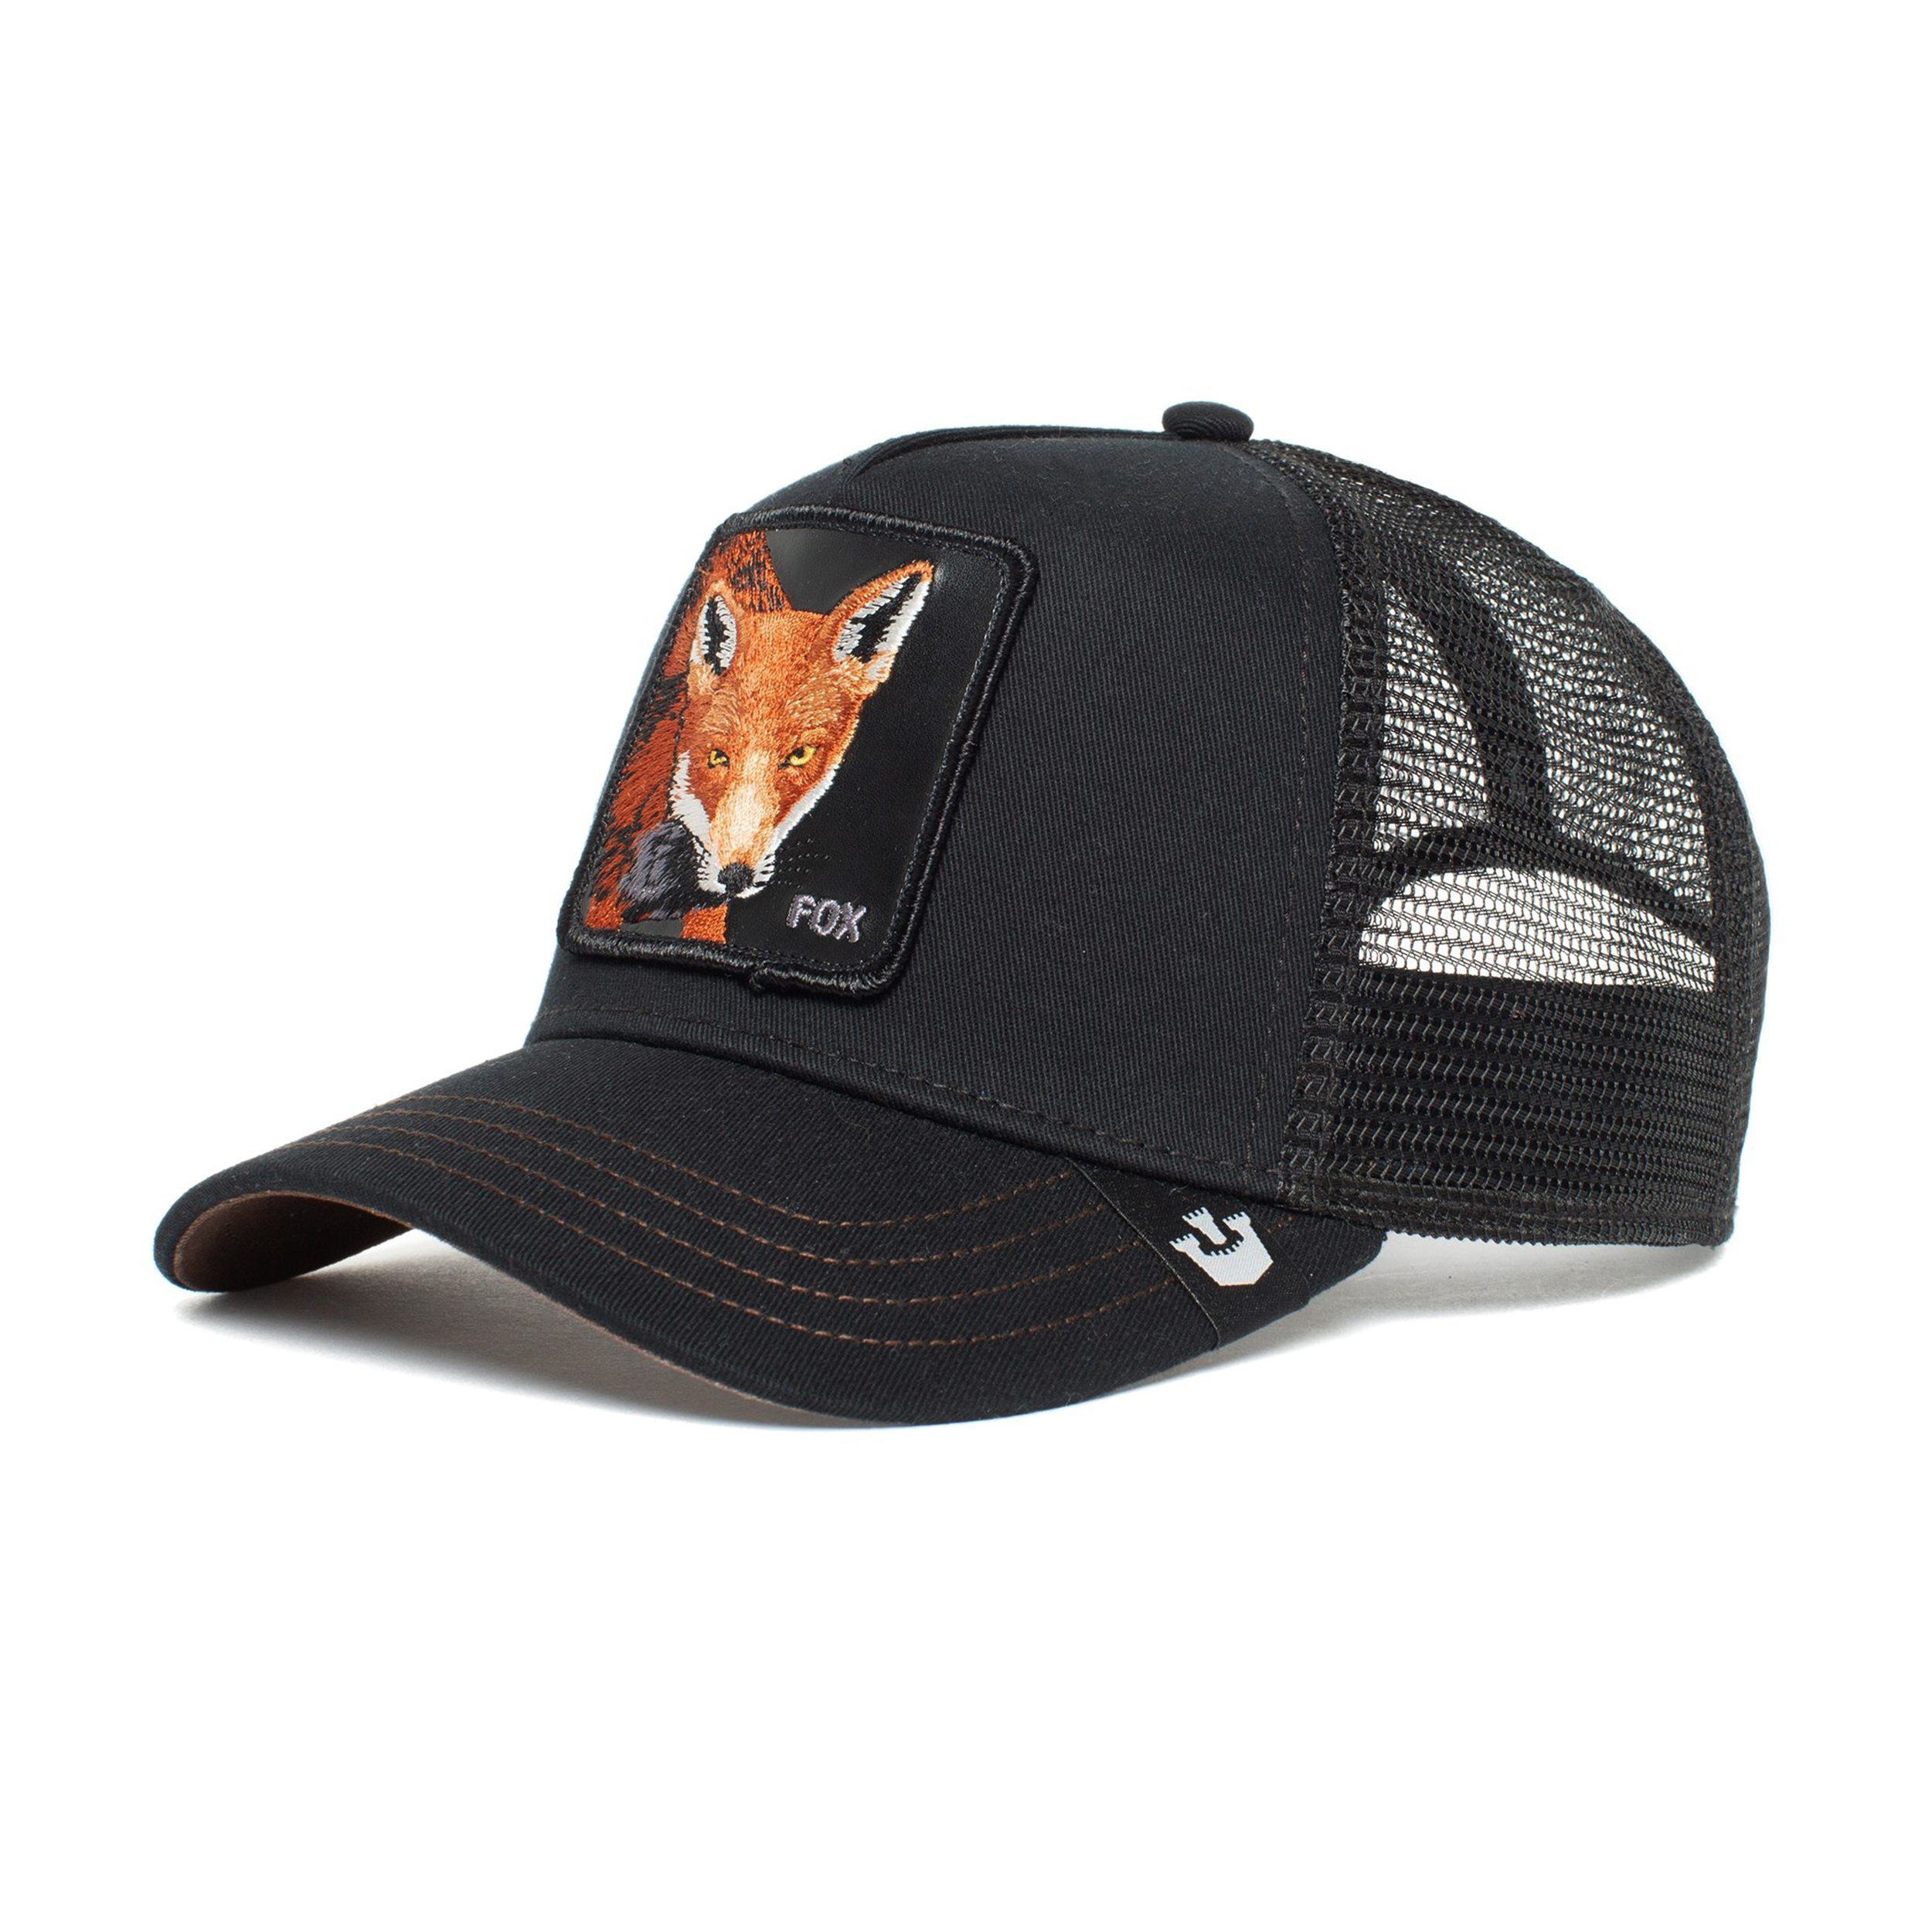 نکته خرید - قیمت روز کلاه کپ گورین براز مدل THE FOX 101-0528 خرید